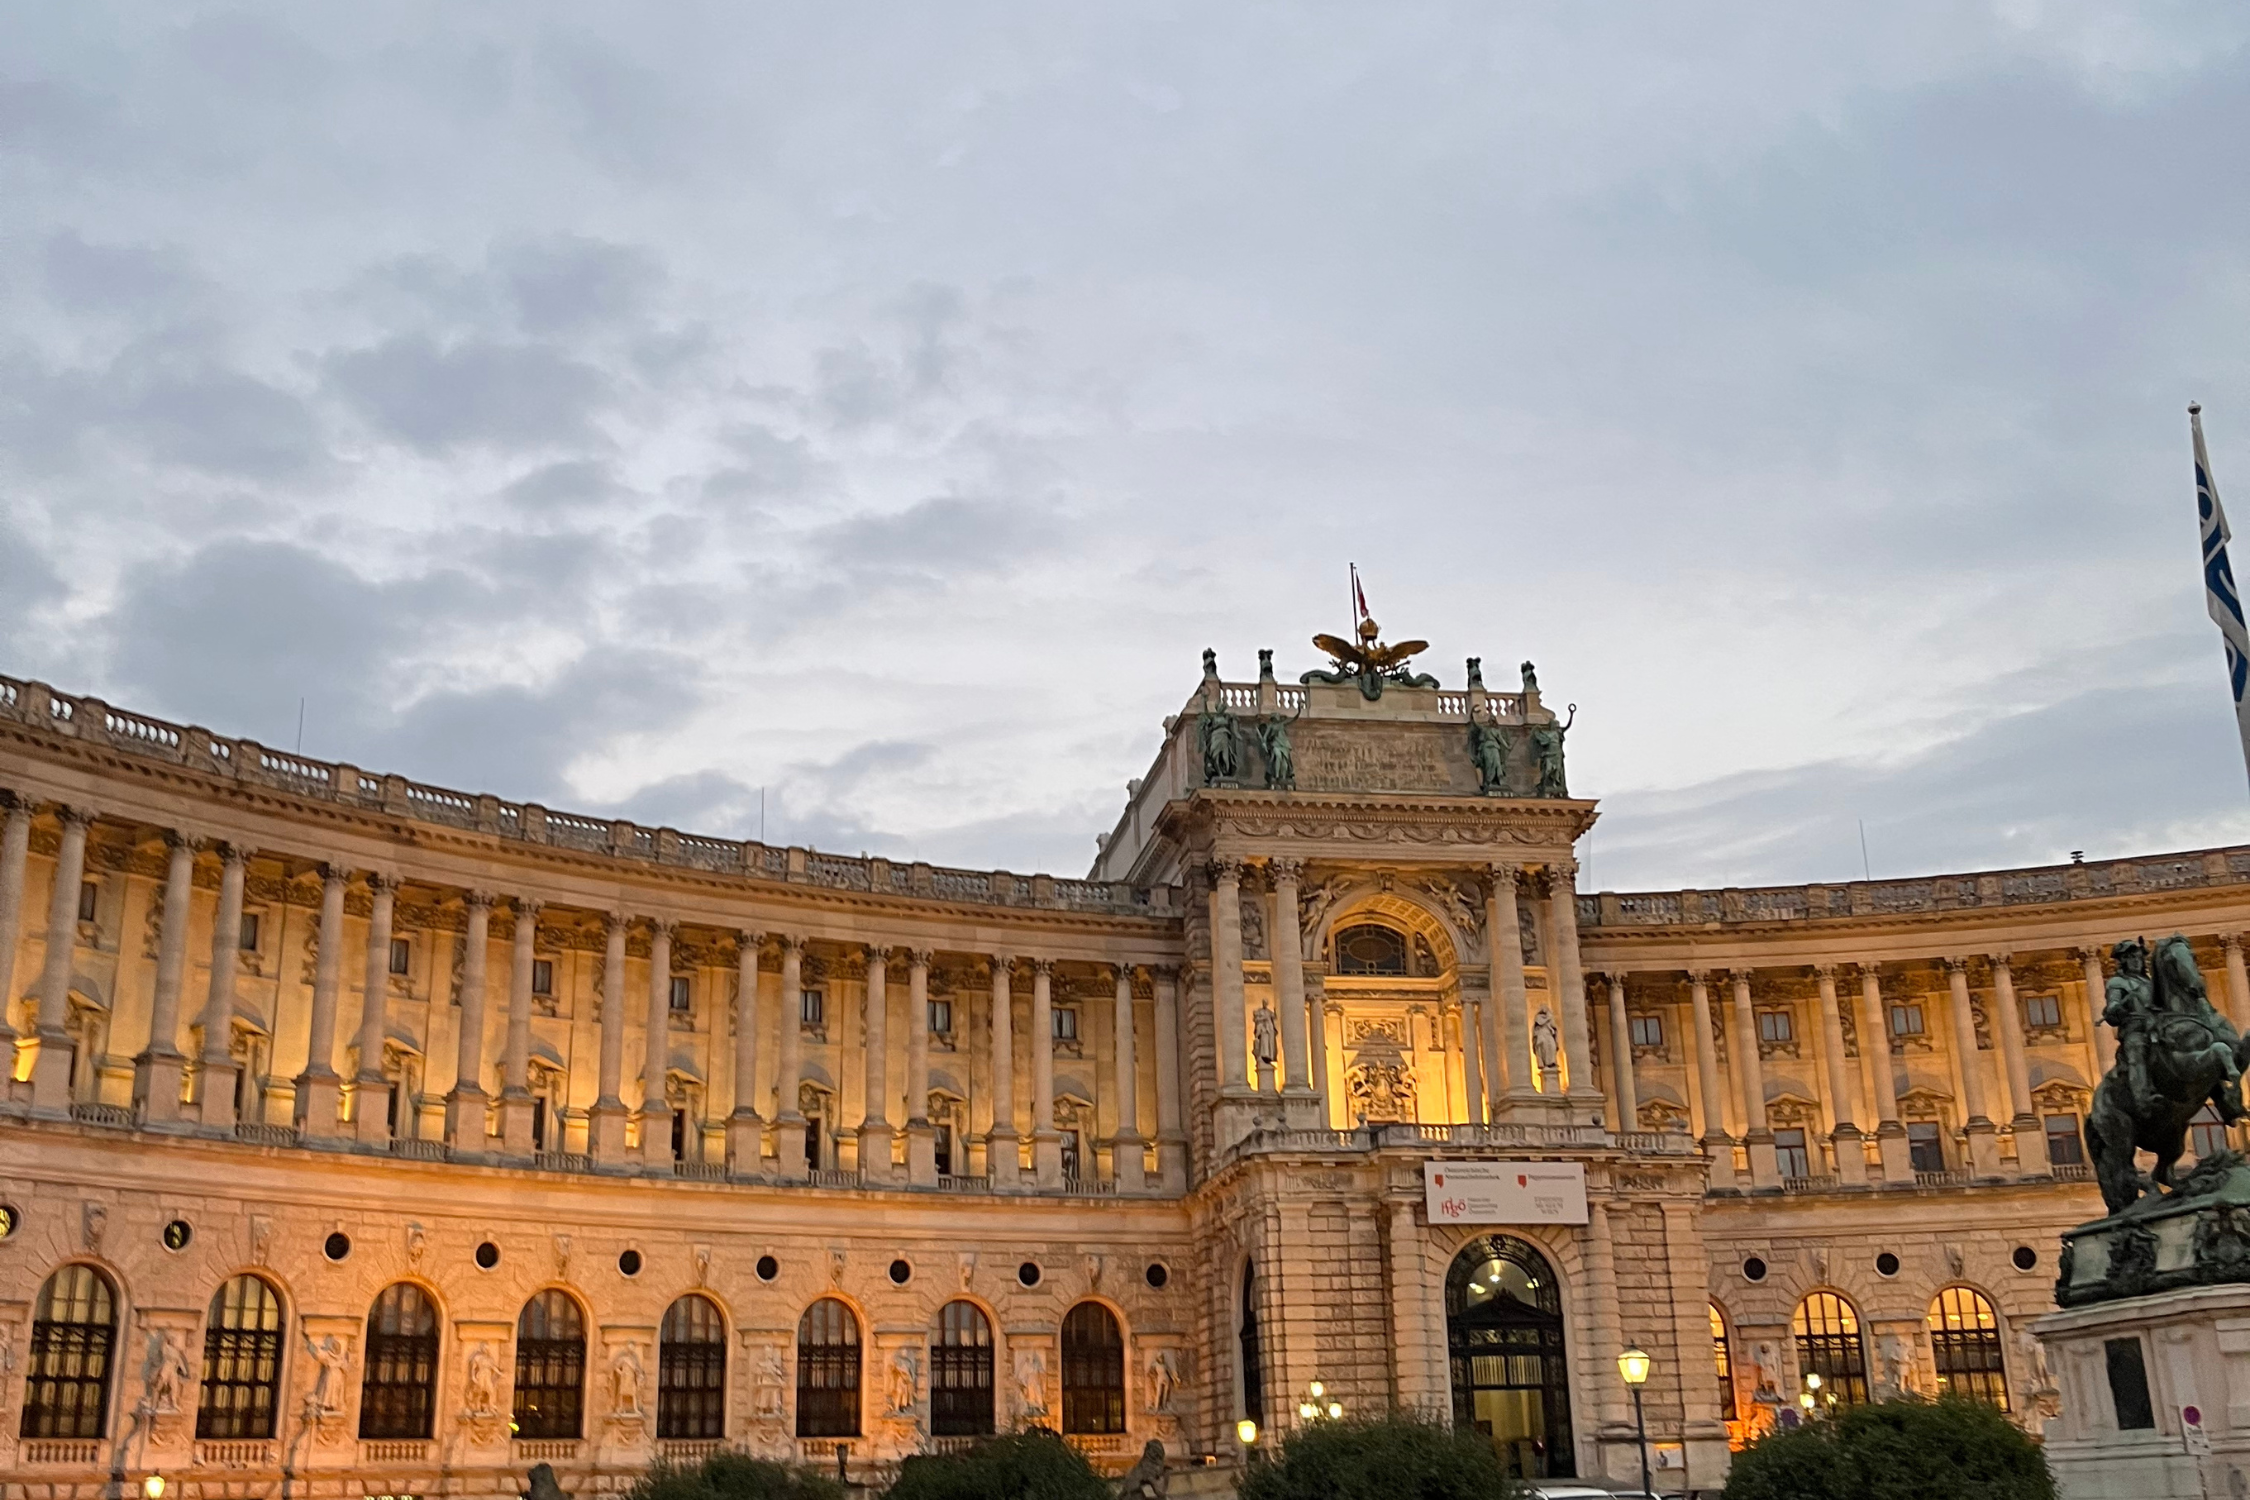 The Vienna Hofburg at Heldenplatz